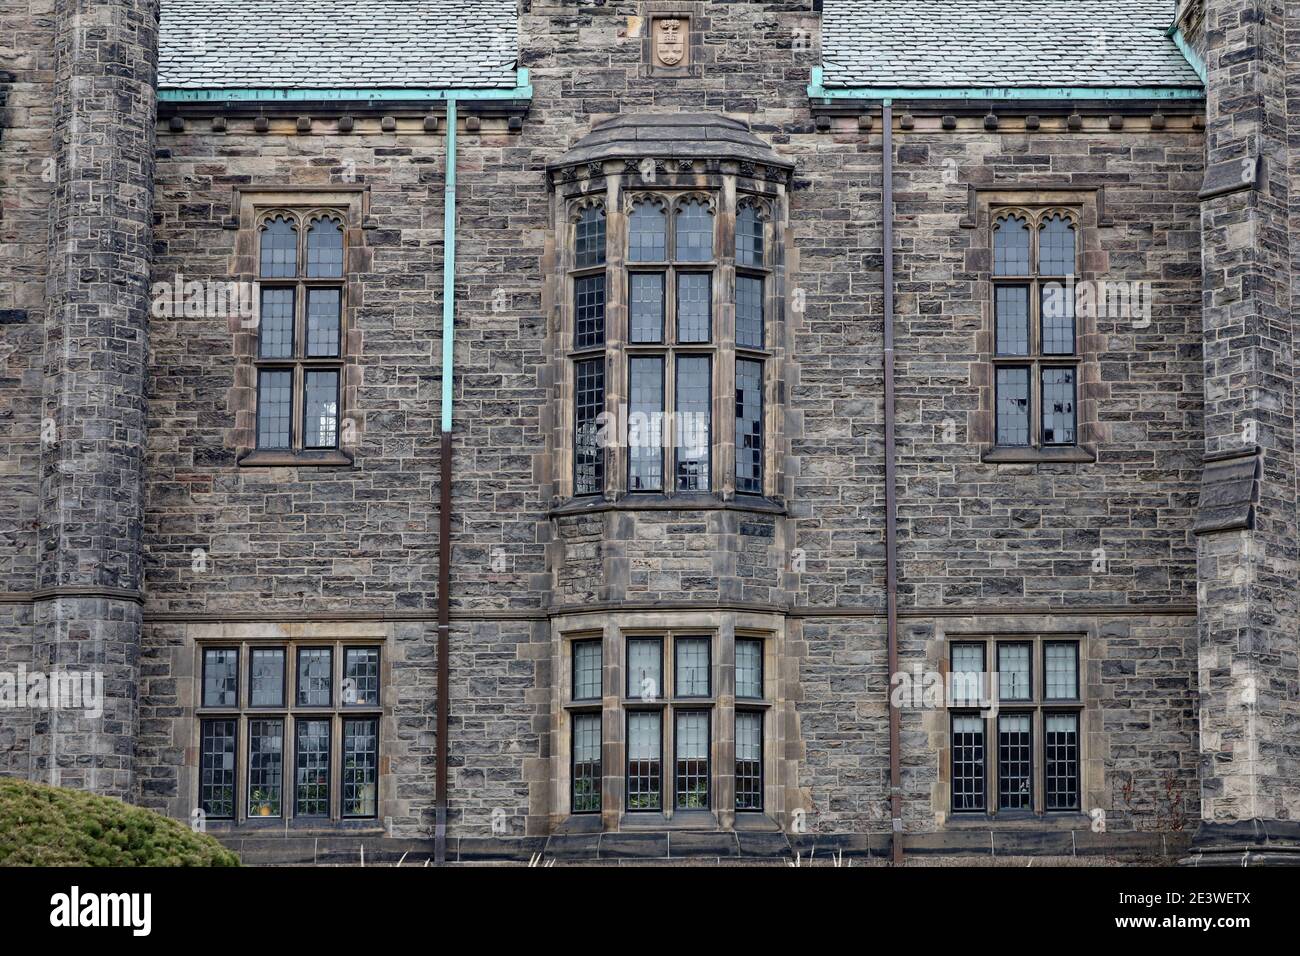 Façade de l'édifice collégial gothique avec baie vitrée, Trinity College de l'Université de Toronto Banque D'Images